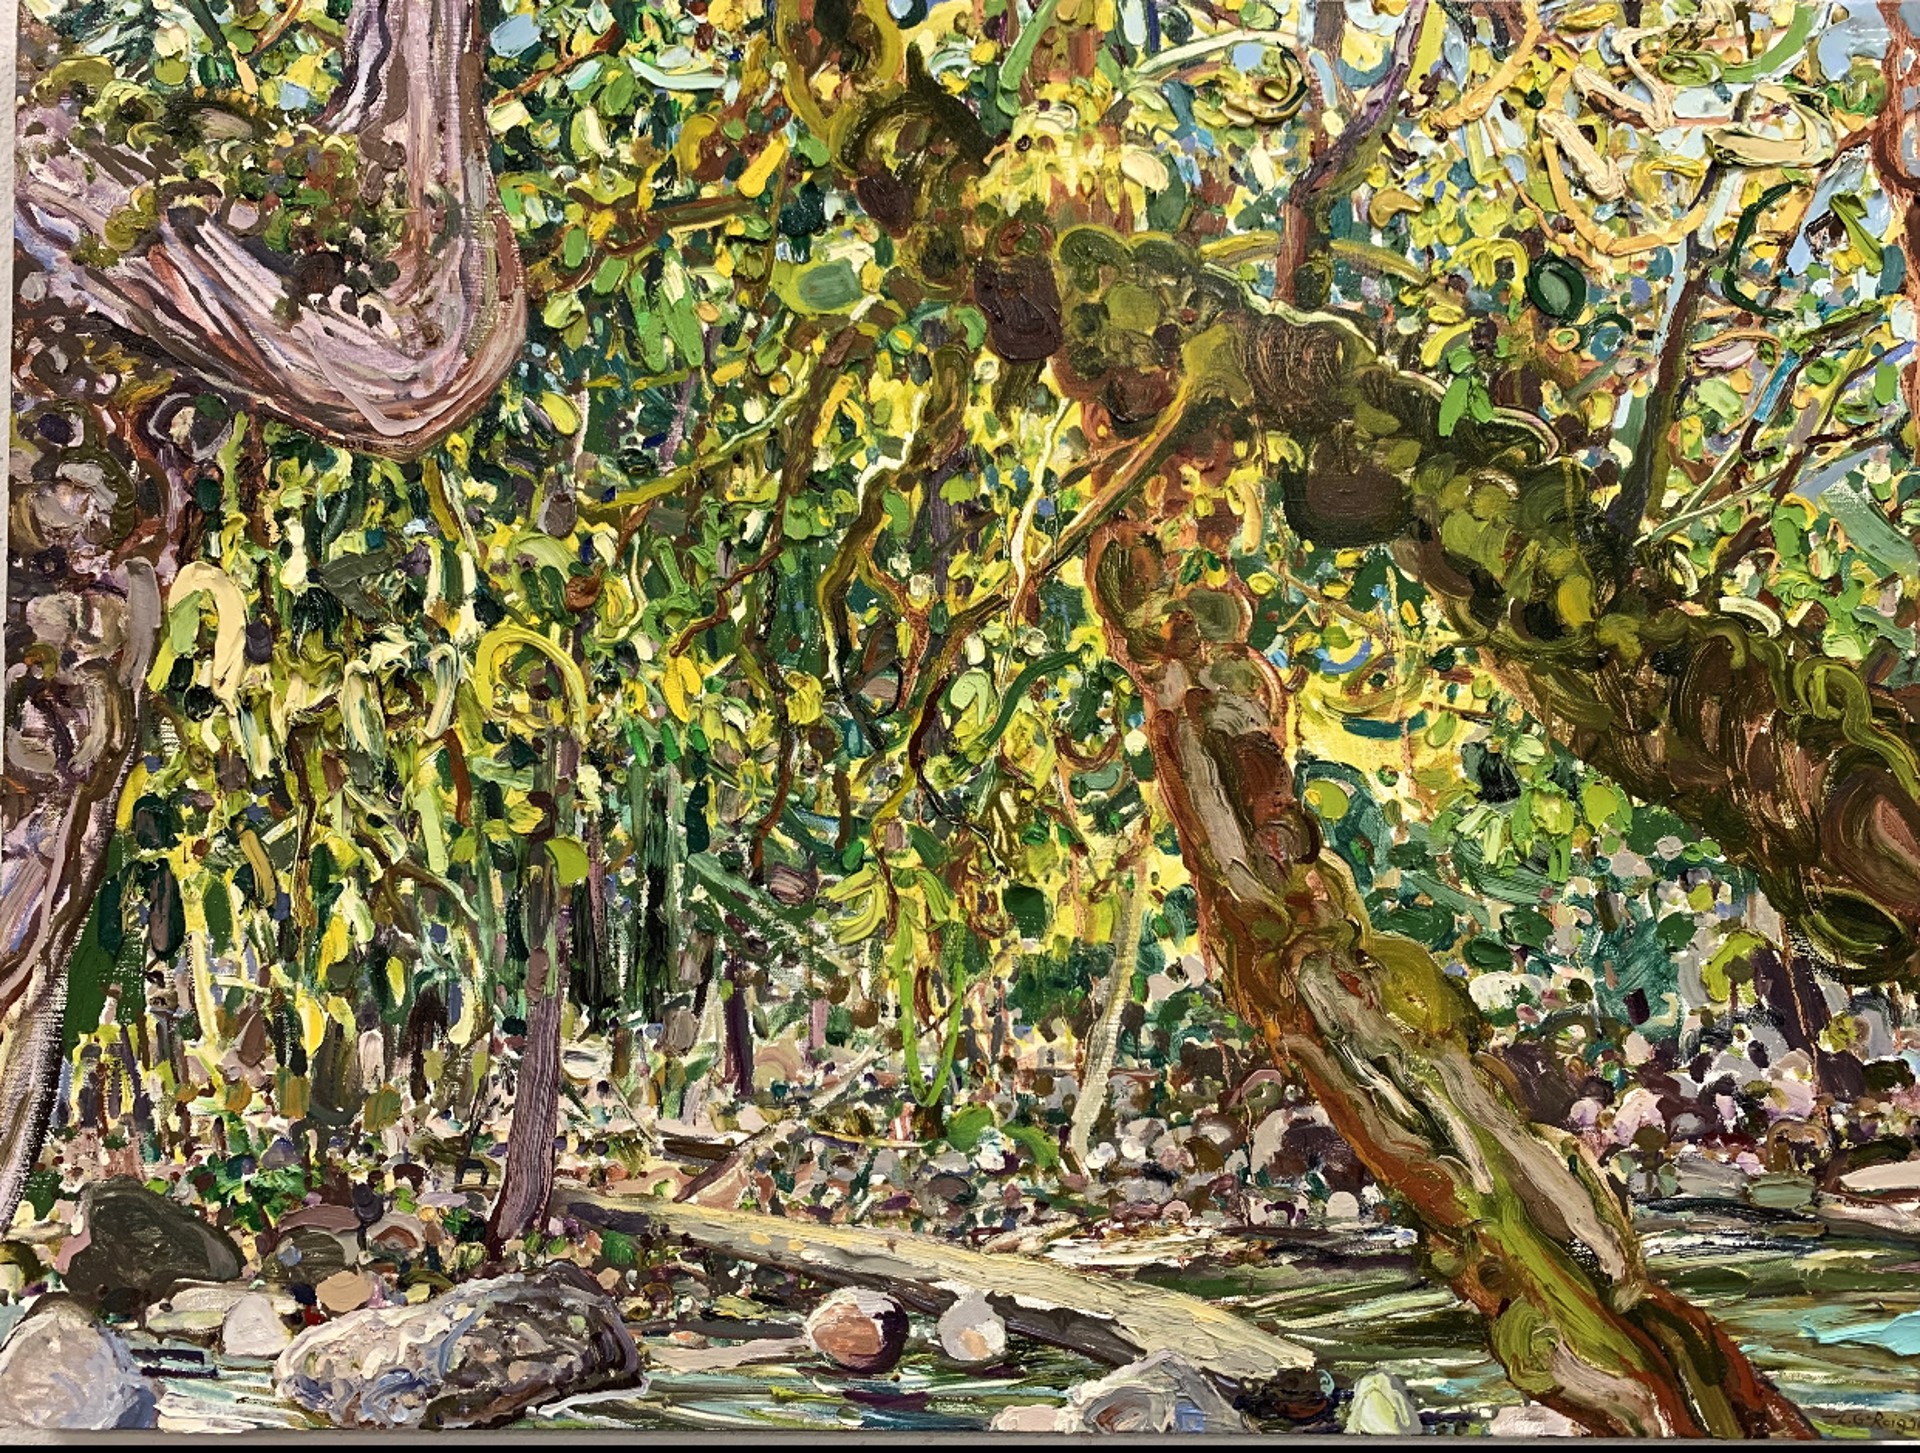 Maple Branch Stream by Lilian Garcia-Roig